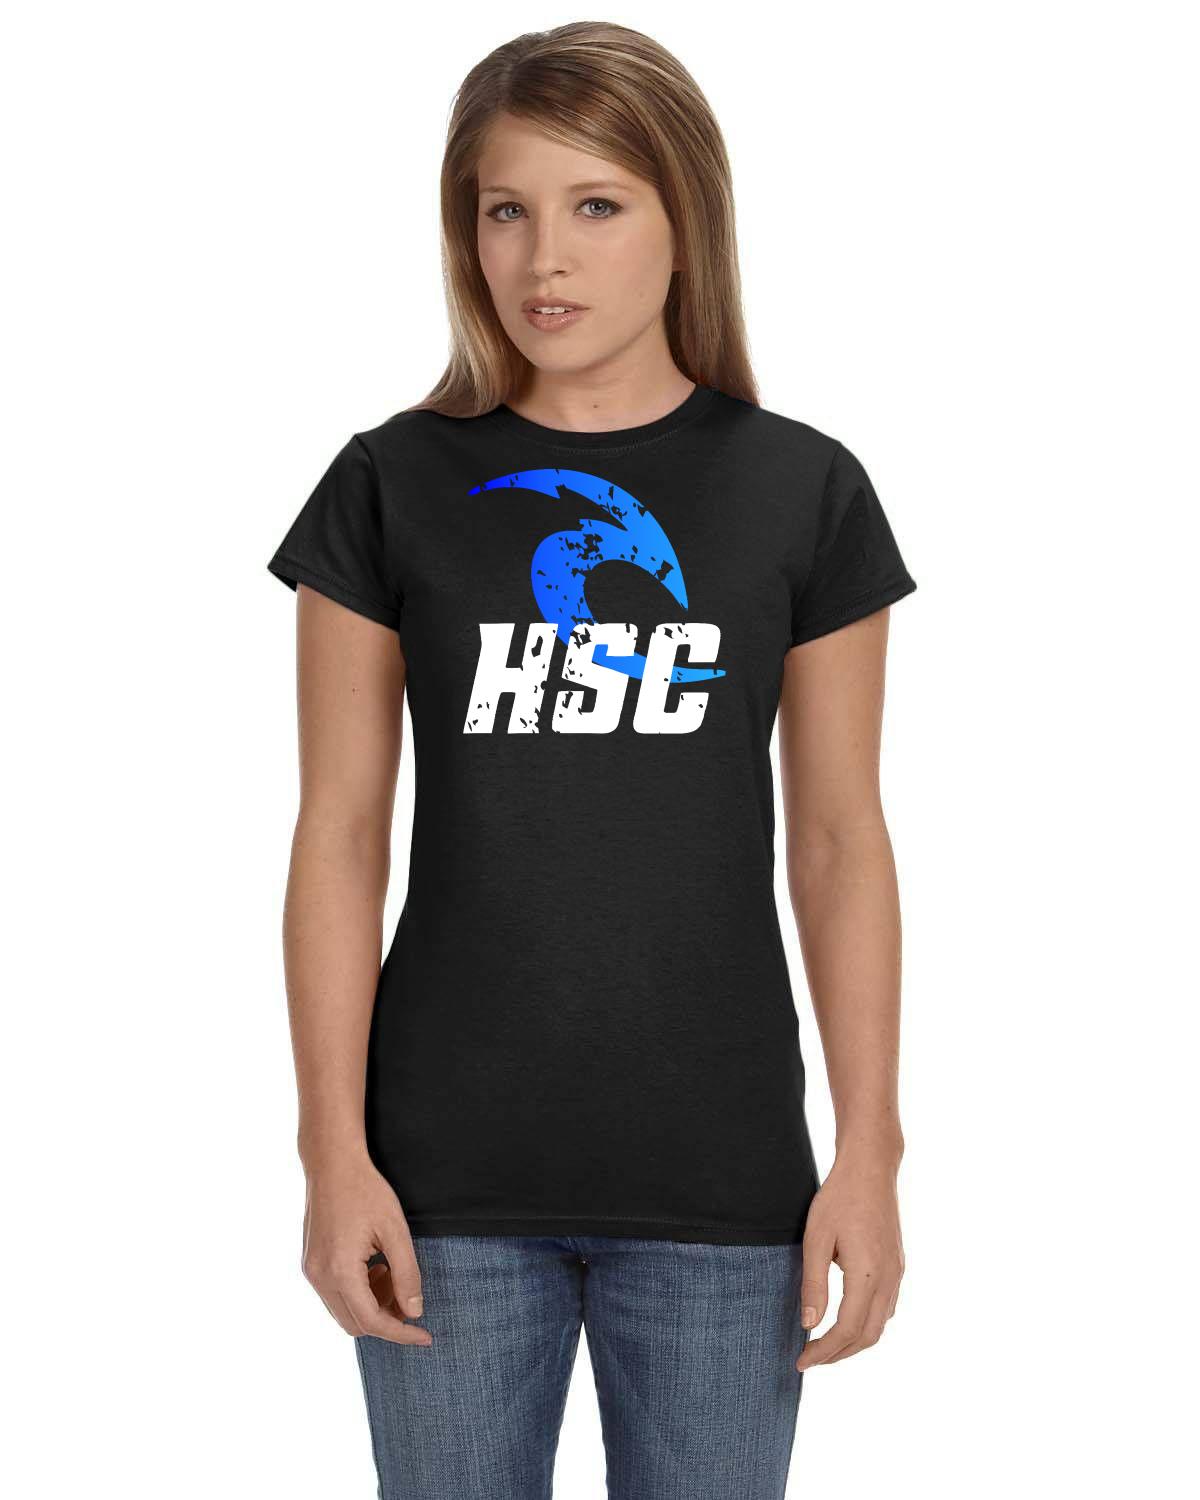 HSC Hanover Swim Club member / sponsor Ladies TShirt